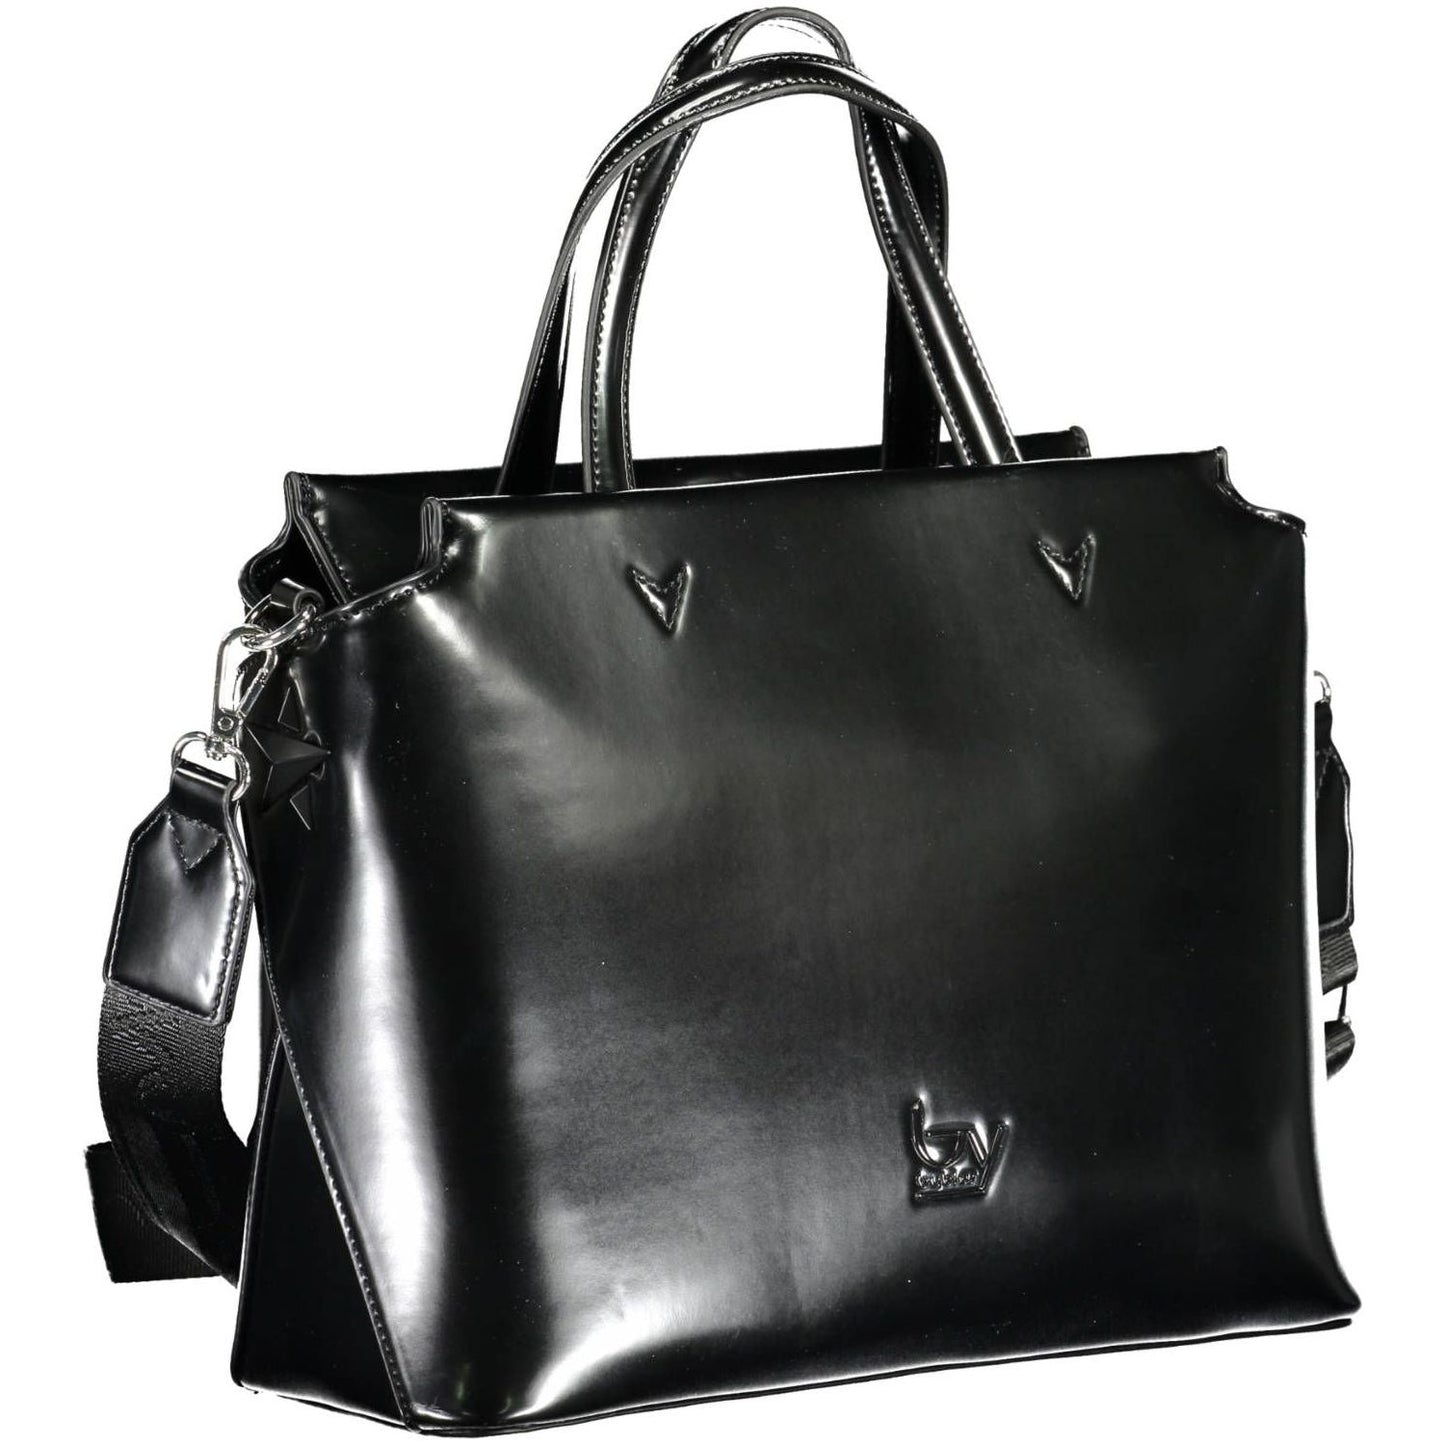 BYBLOS | Elegant Black Two-Handle Bag with Contrasting Details| McRichard Designer Brands   